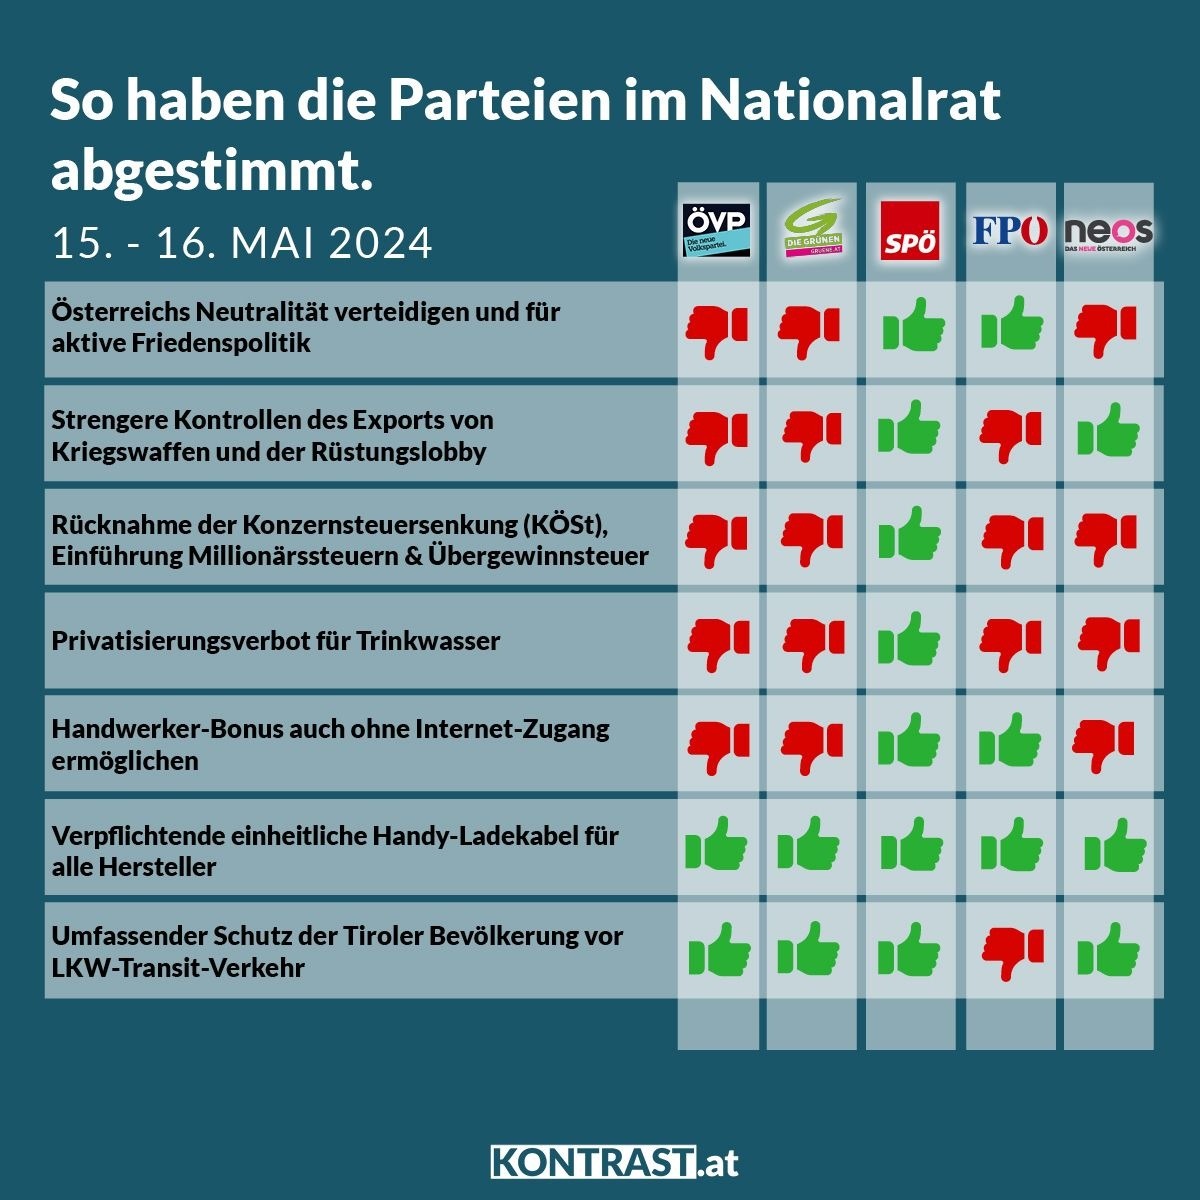 Diese Woche ging es im Parlament unter anderem um Österreichs Neutralität und strengere Kontrollen beim Export von Kriegswaffen, aber auch um die Einführung von Übergewinn- und Millionärssteuern. Hier das Abstimmungsverhalten 👇 Mehr dazu: kontrast.at/nationalratssi…